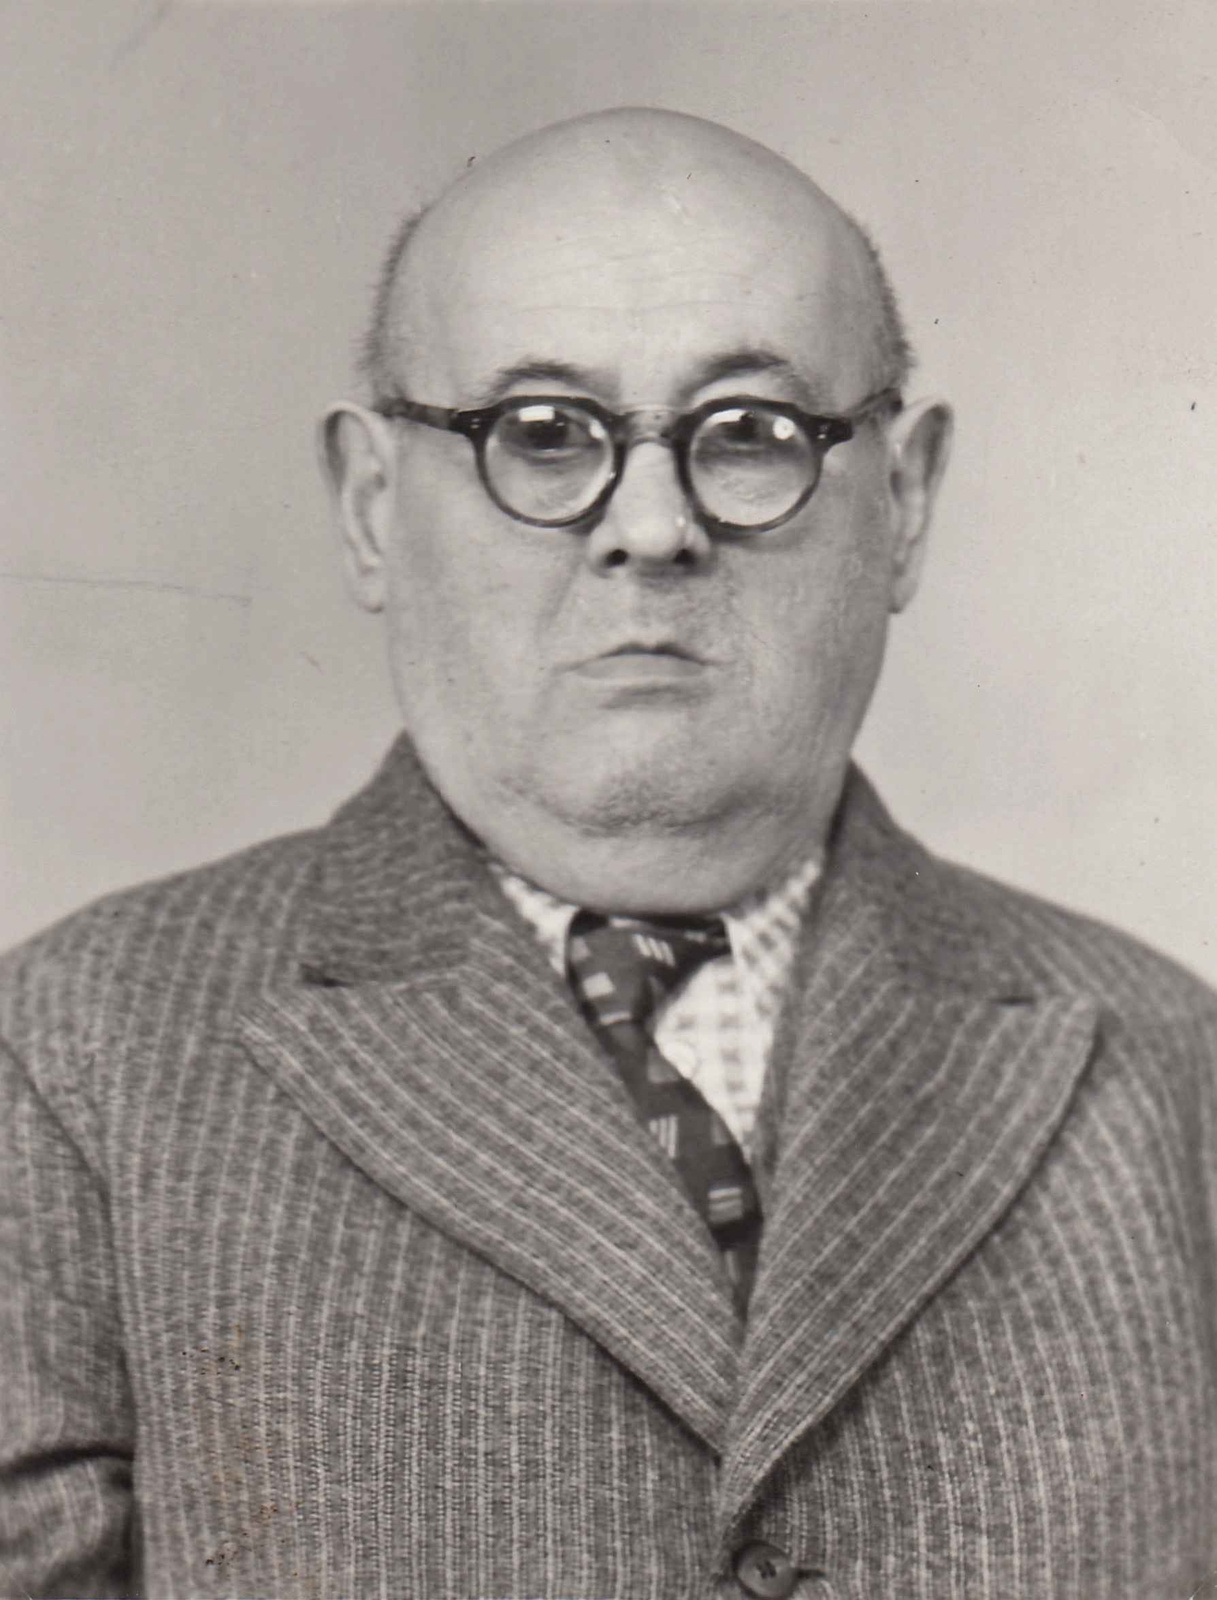 Bulzu Atanáz János (1934-től Buza János)